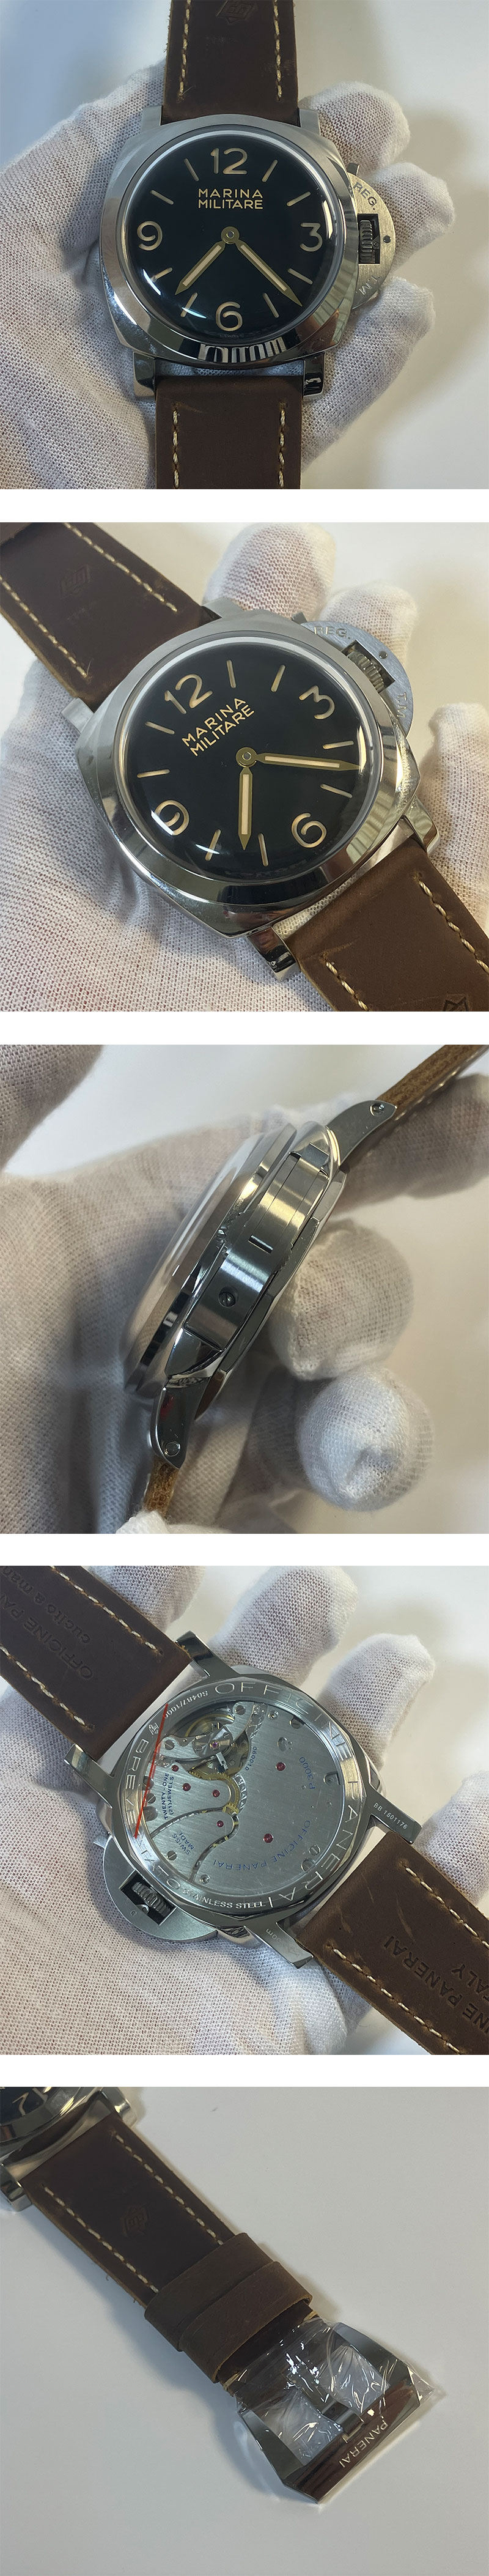 メンズ腕時計パネライコピー ルミノール 1950 ミリターレ 3DAYS アッチャイオ  PAM00673  